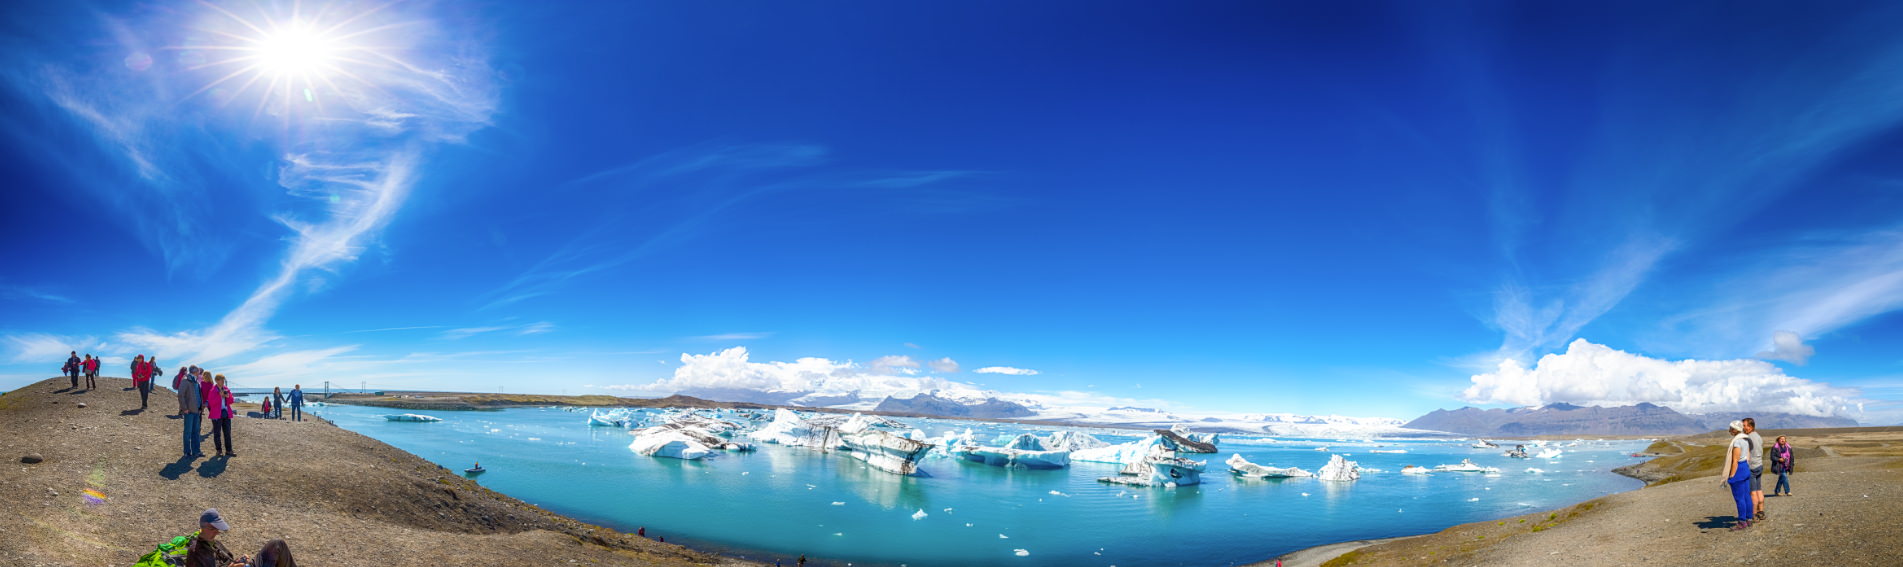 傑古沙龍冰河湖